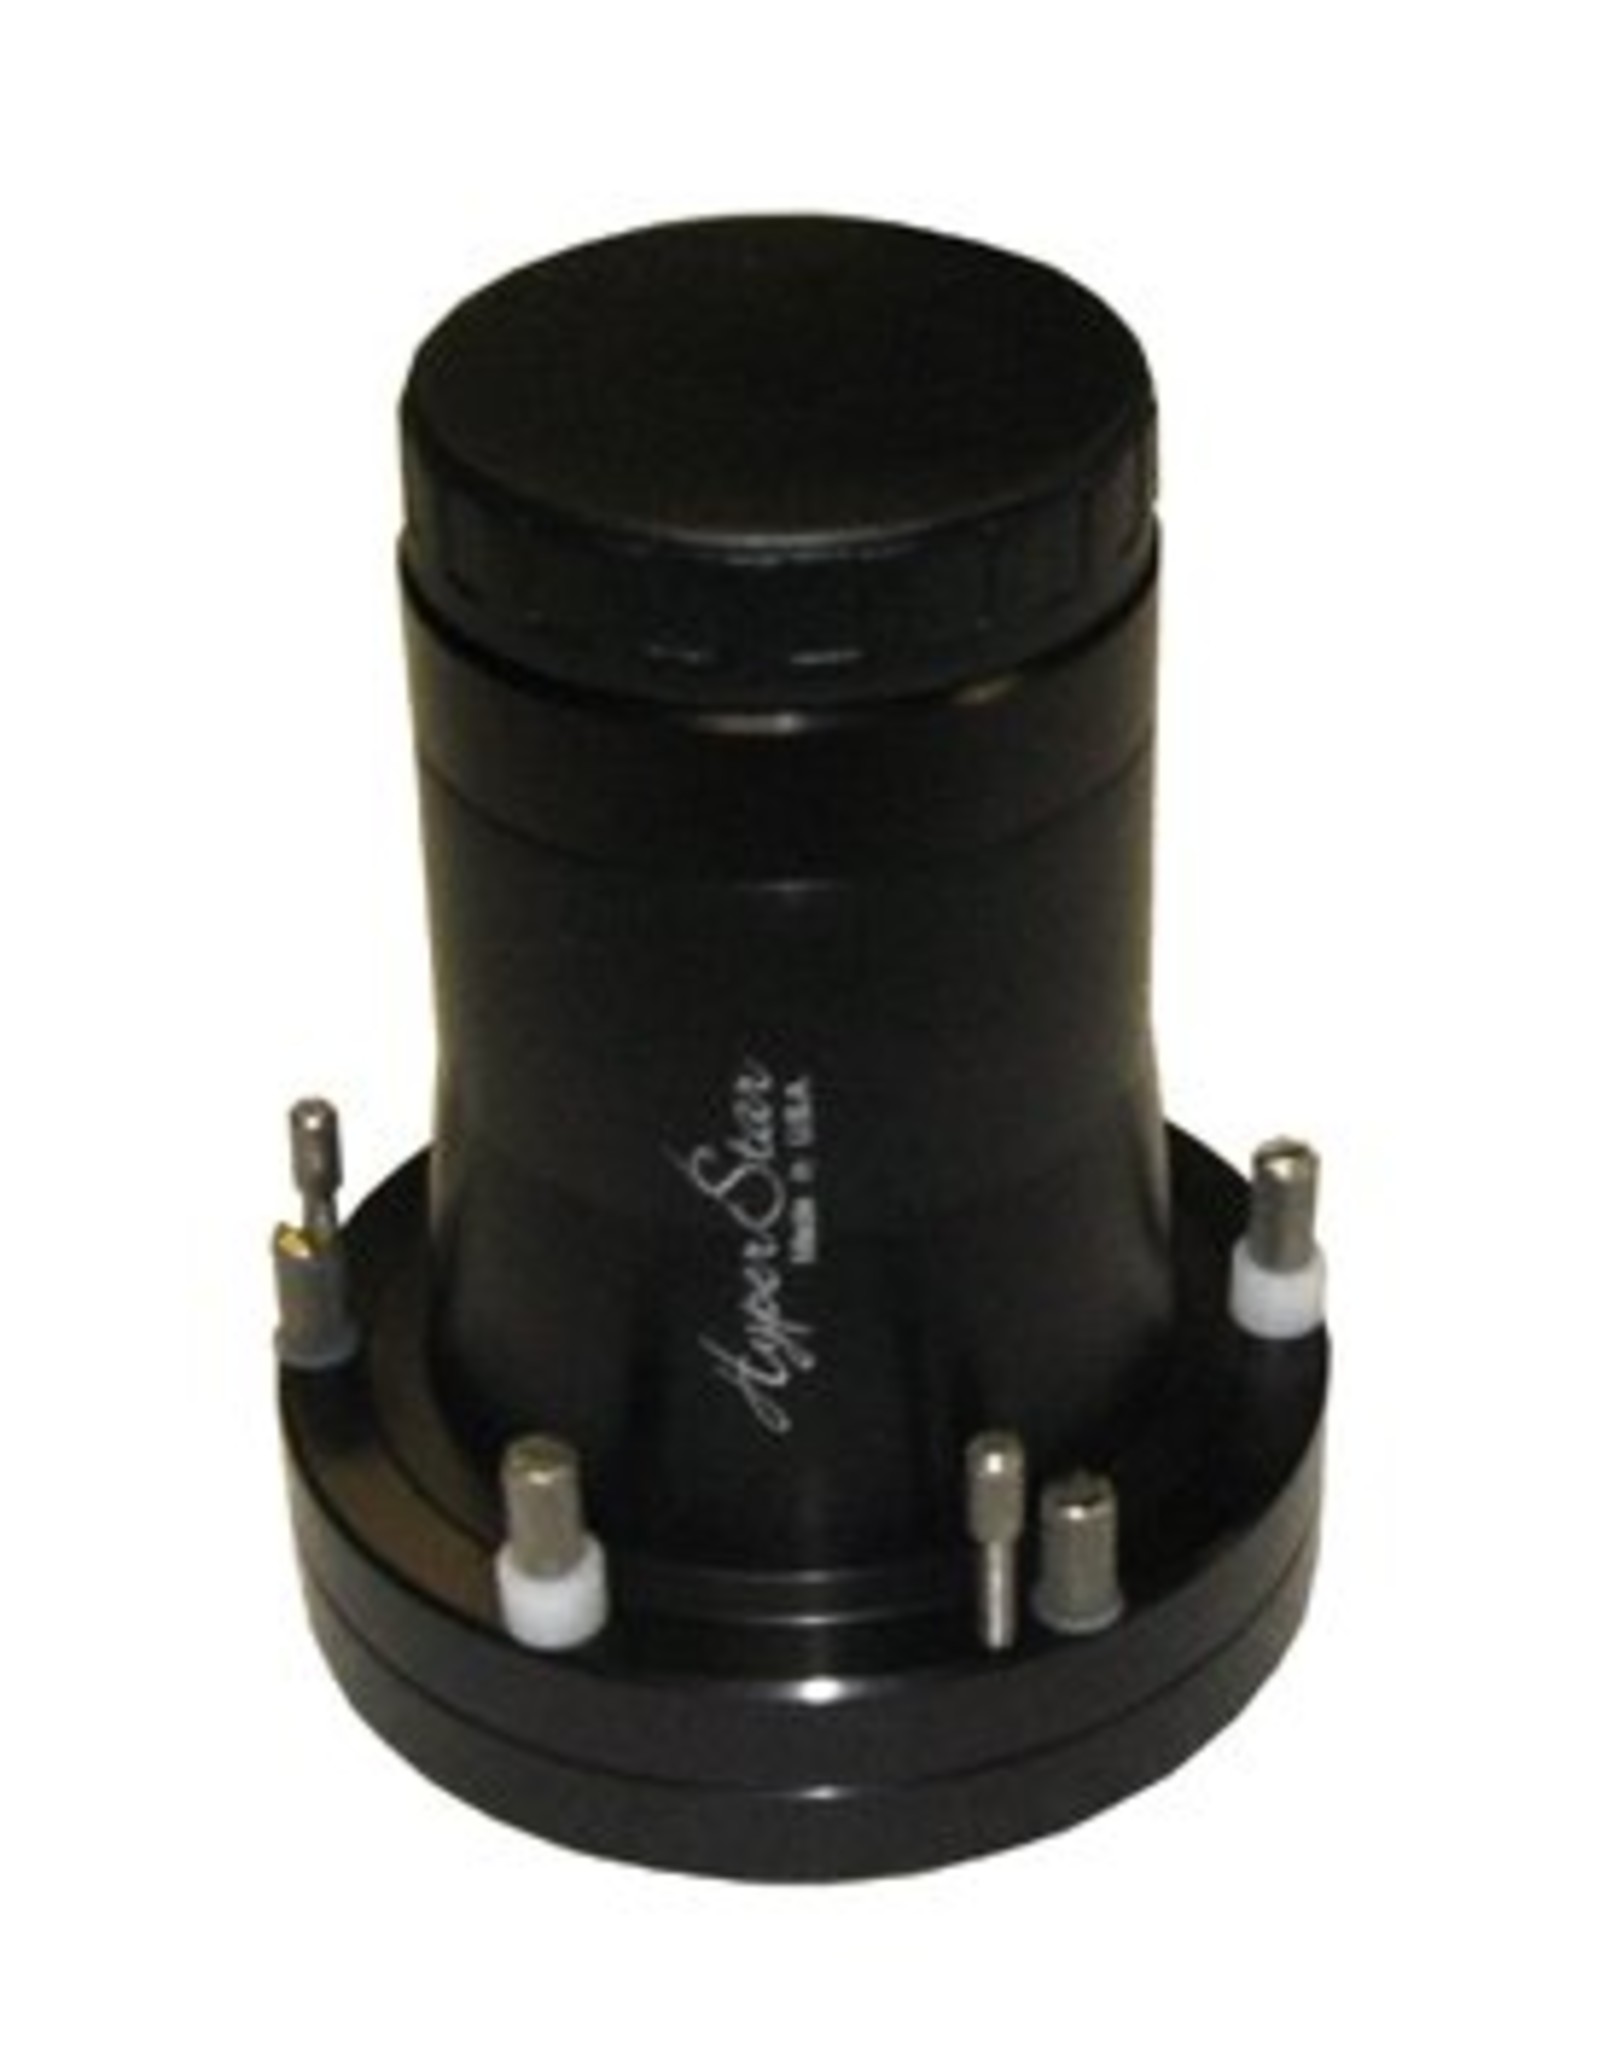 Hyperstar Starizona HyperStar 3 Lens - 9.25" Celestron with Filter Slider (Specify Camera Model)